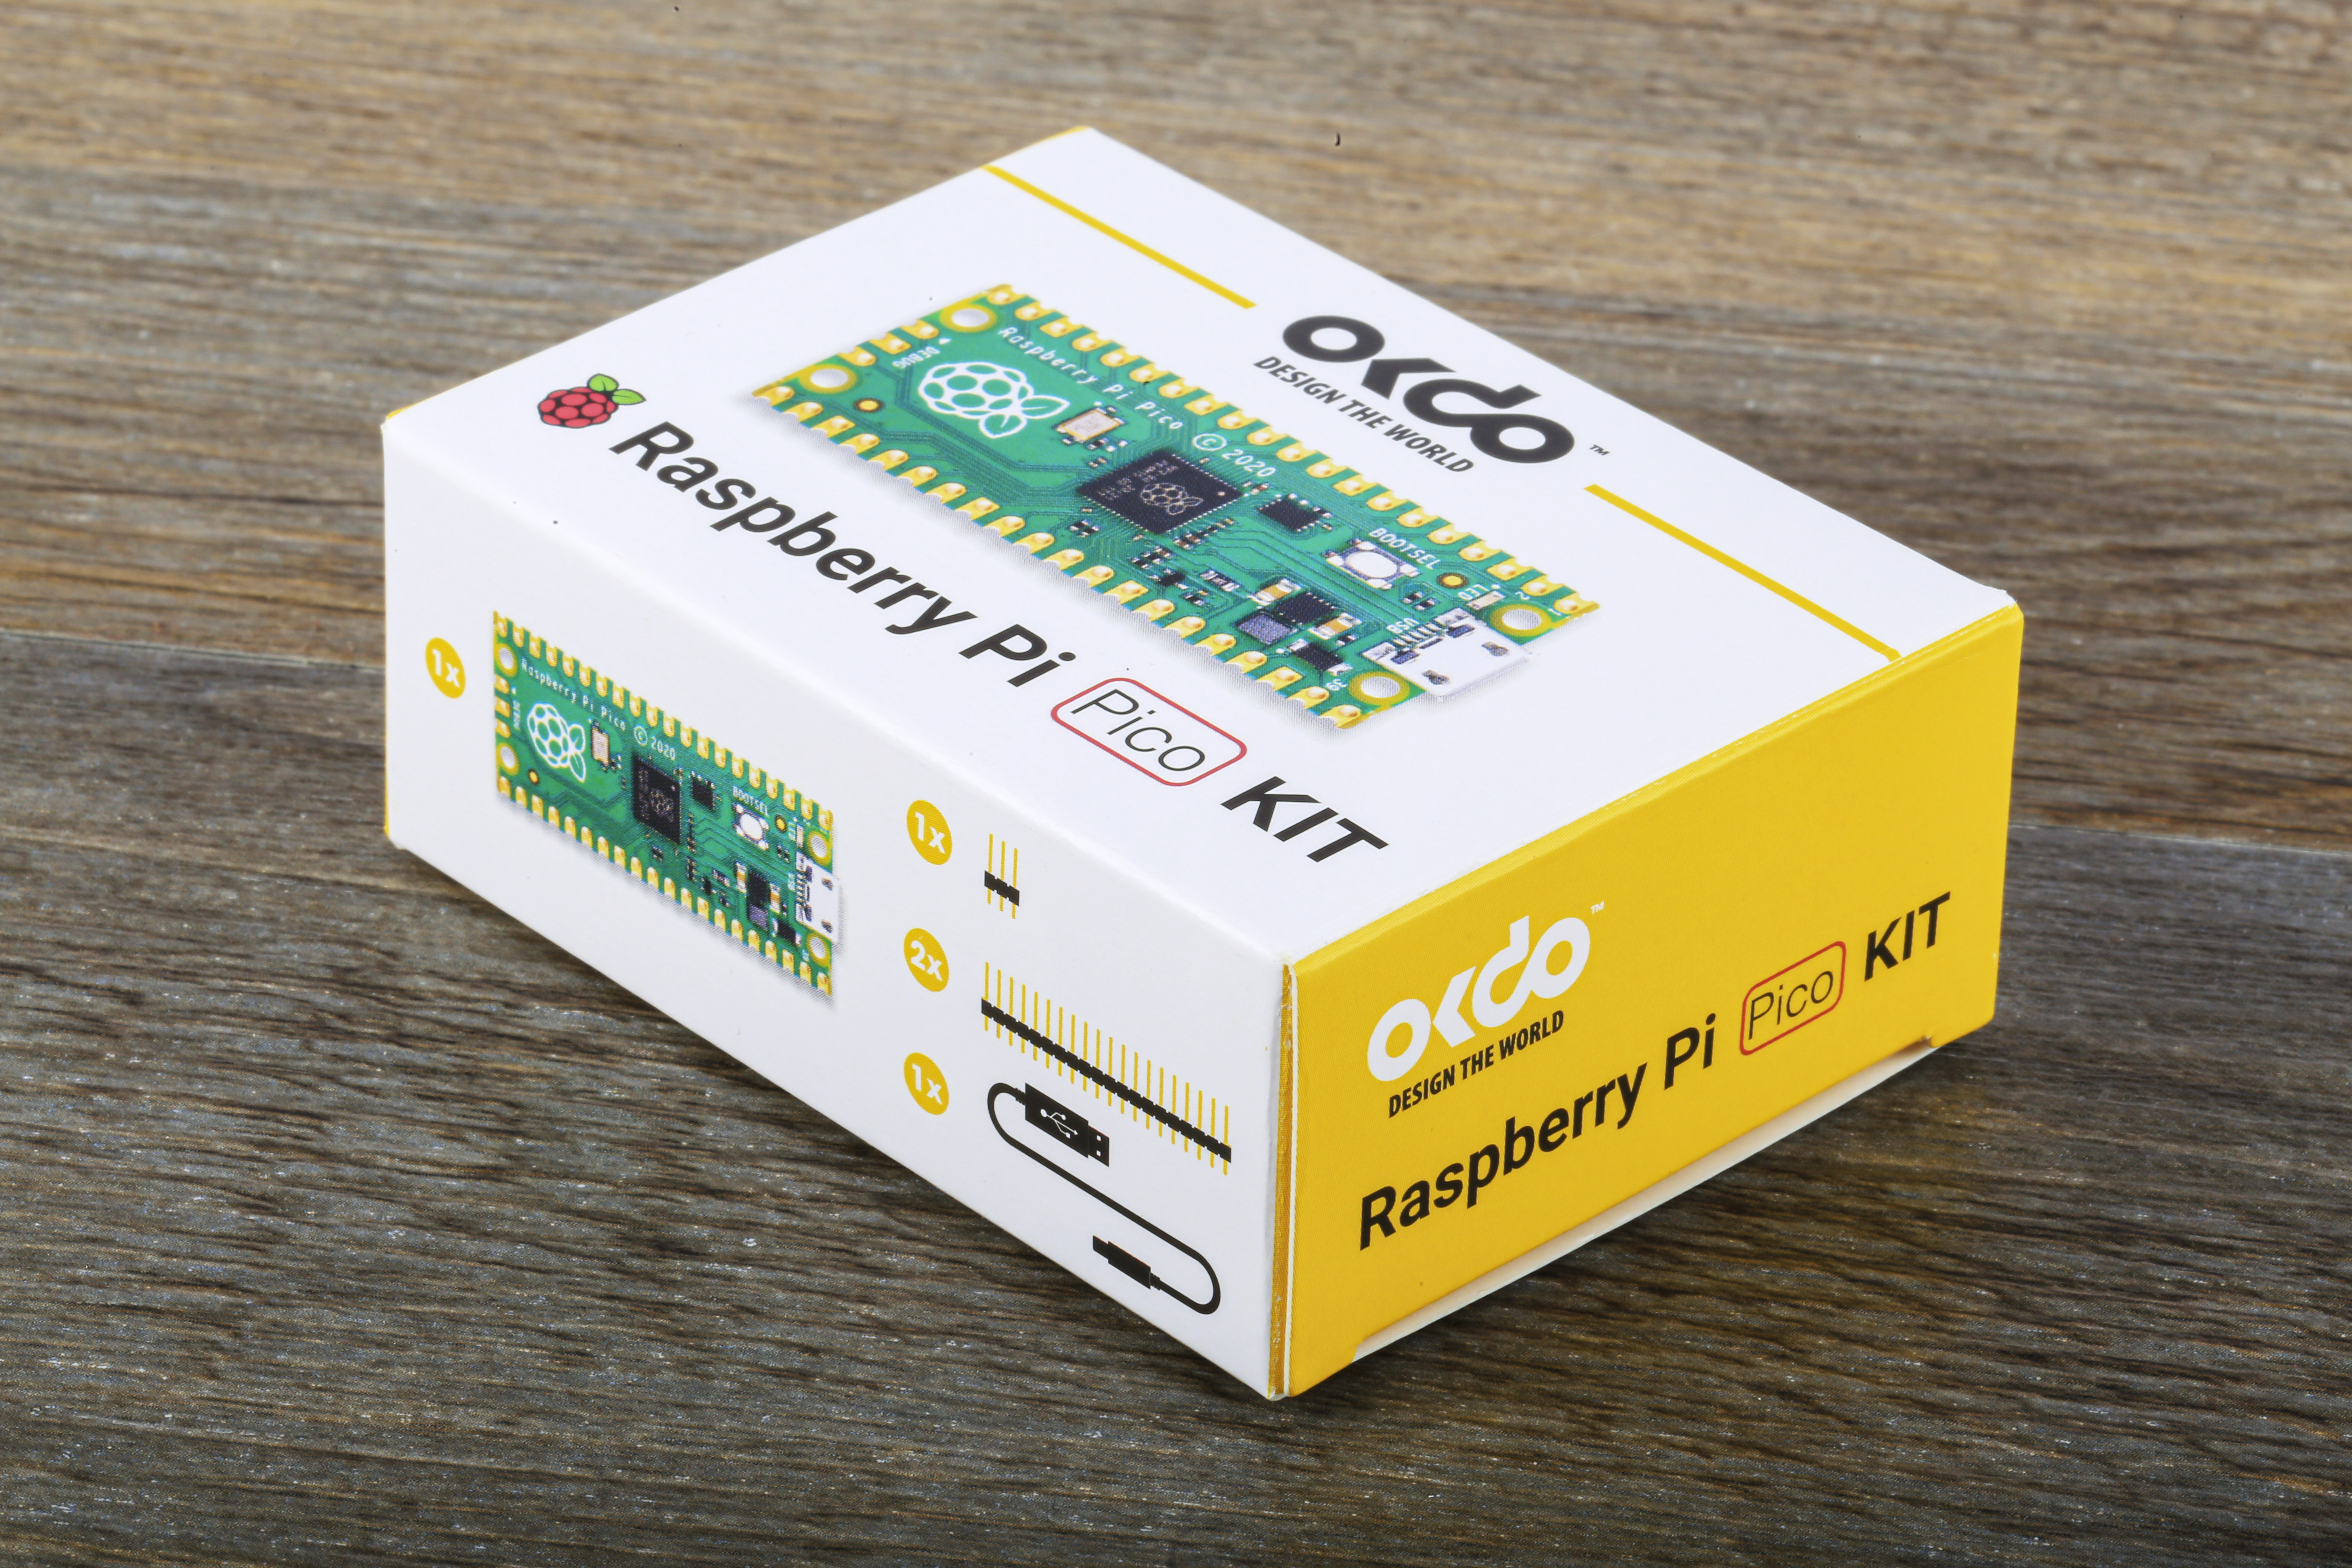 OKdo Raspberry Pi Pico Kit - OKdo